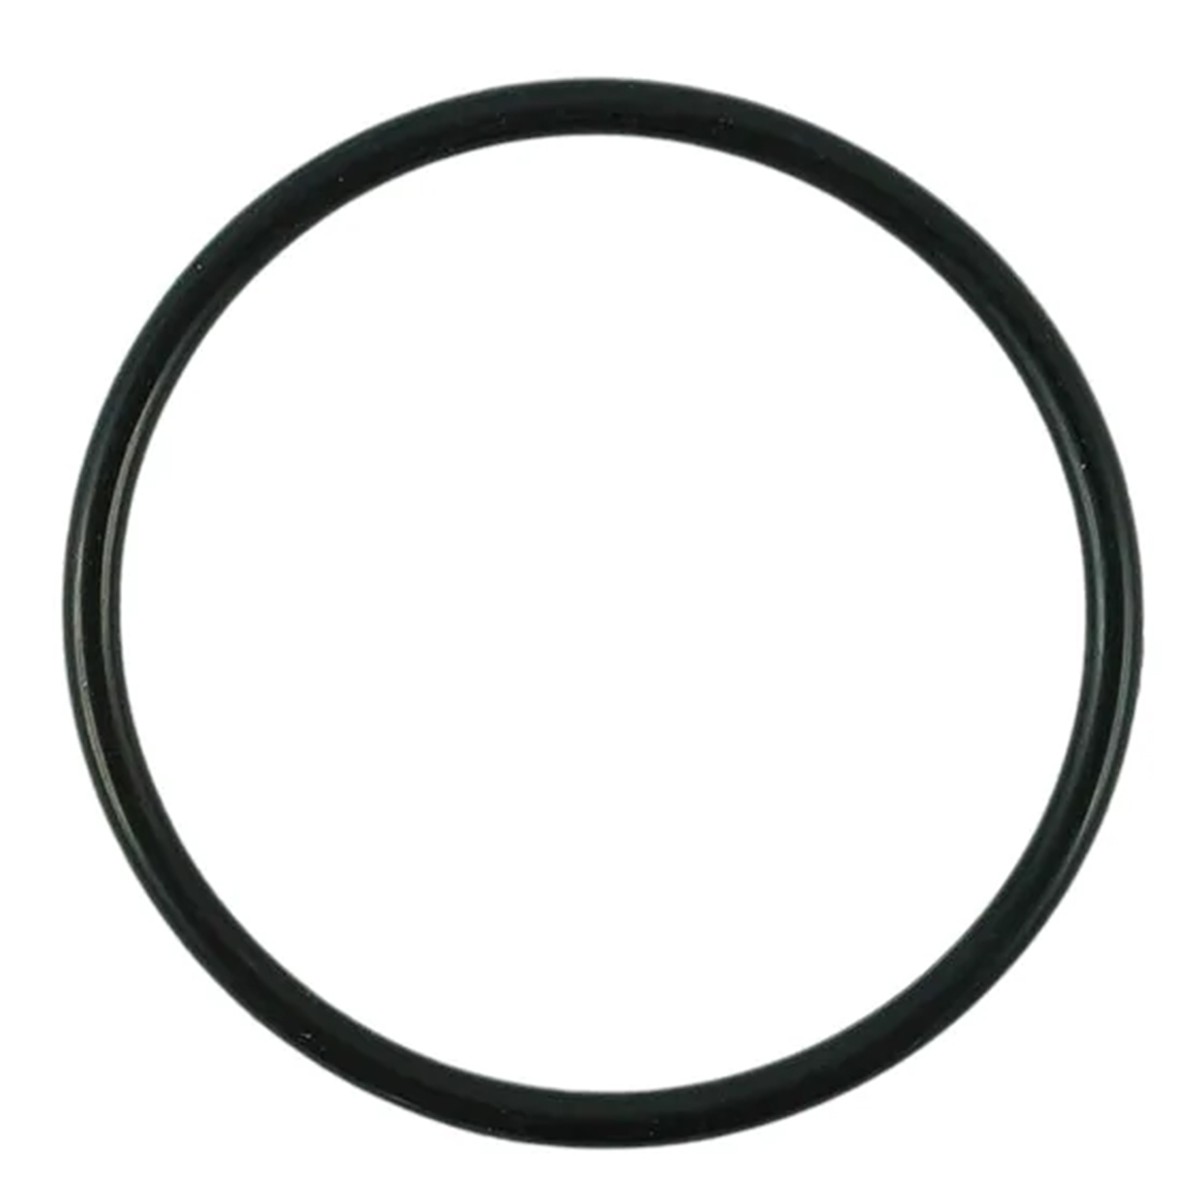 O-ring 49.40 x 3.10 mm / LS MT3.35 / LS MT3.40 / LS MT3.50 / LS MT3.60 / S80205010 / 40029224